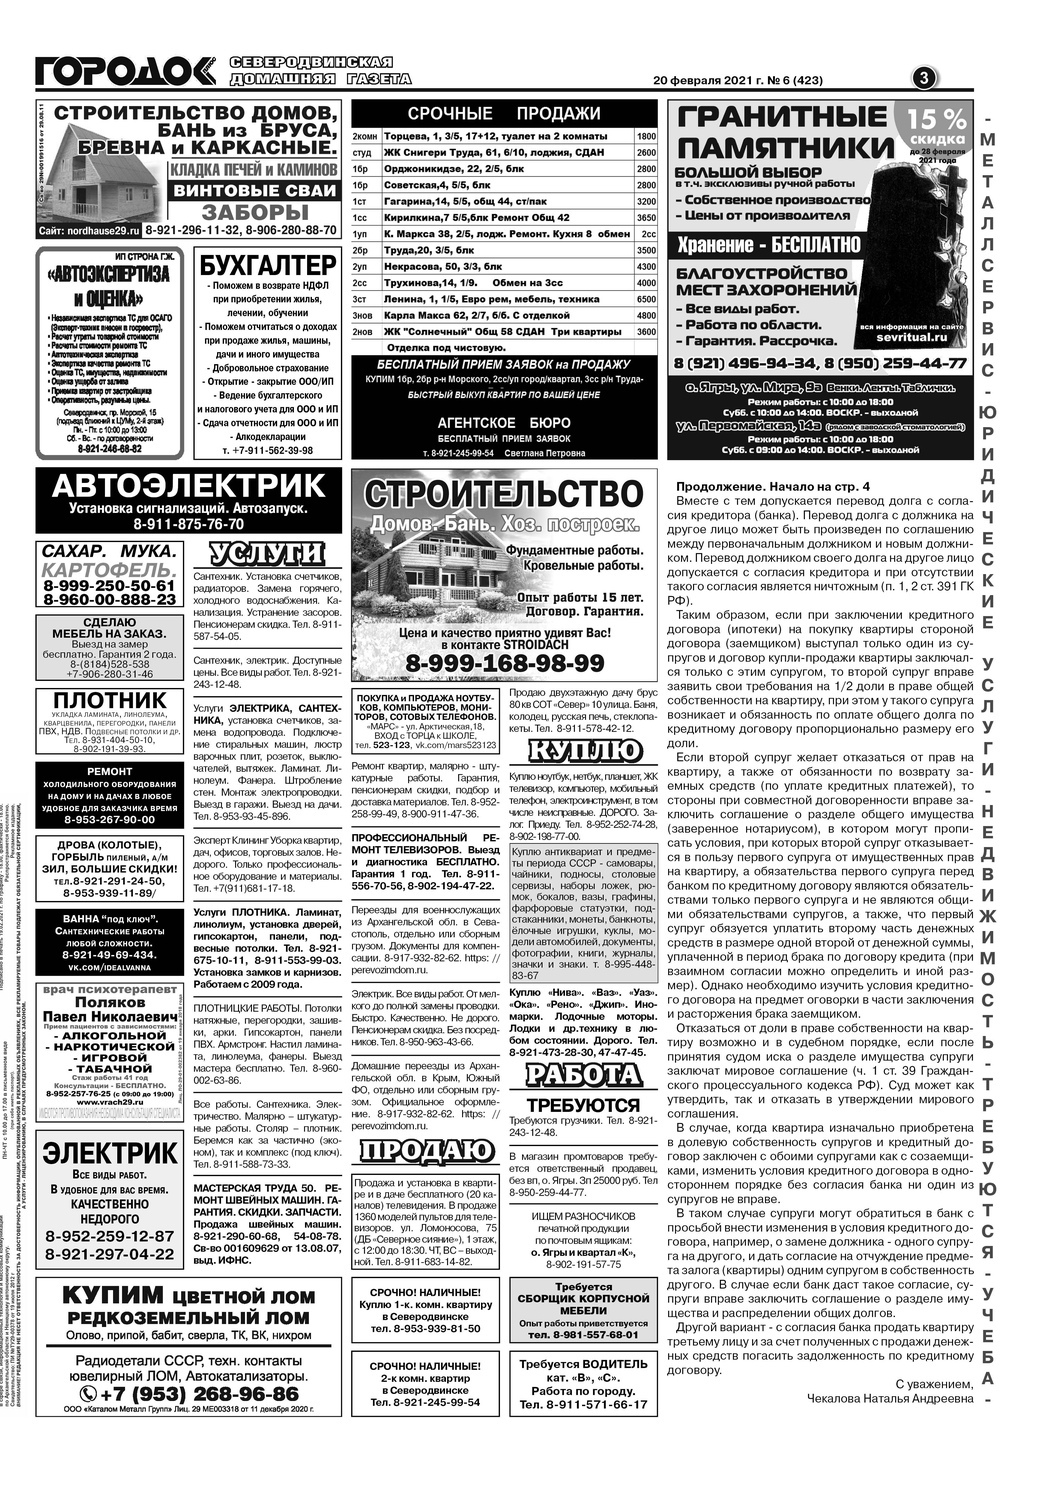 Городок плюс, выпуск номер 6 от 20 февраля 2021 года, страница 3.